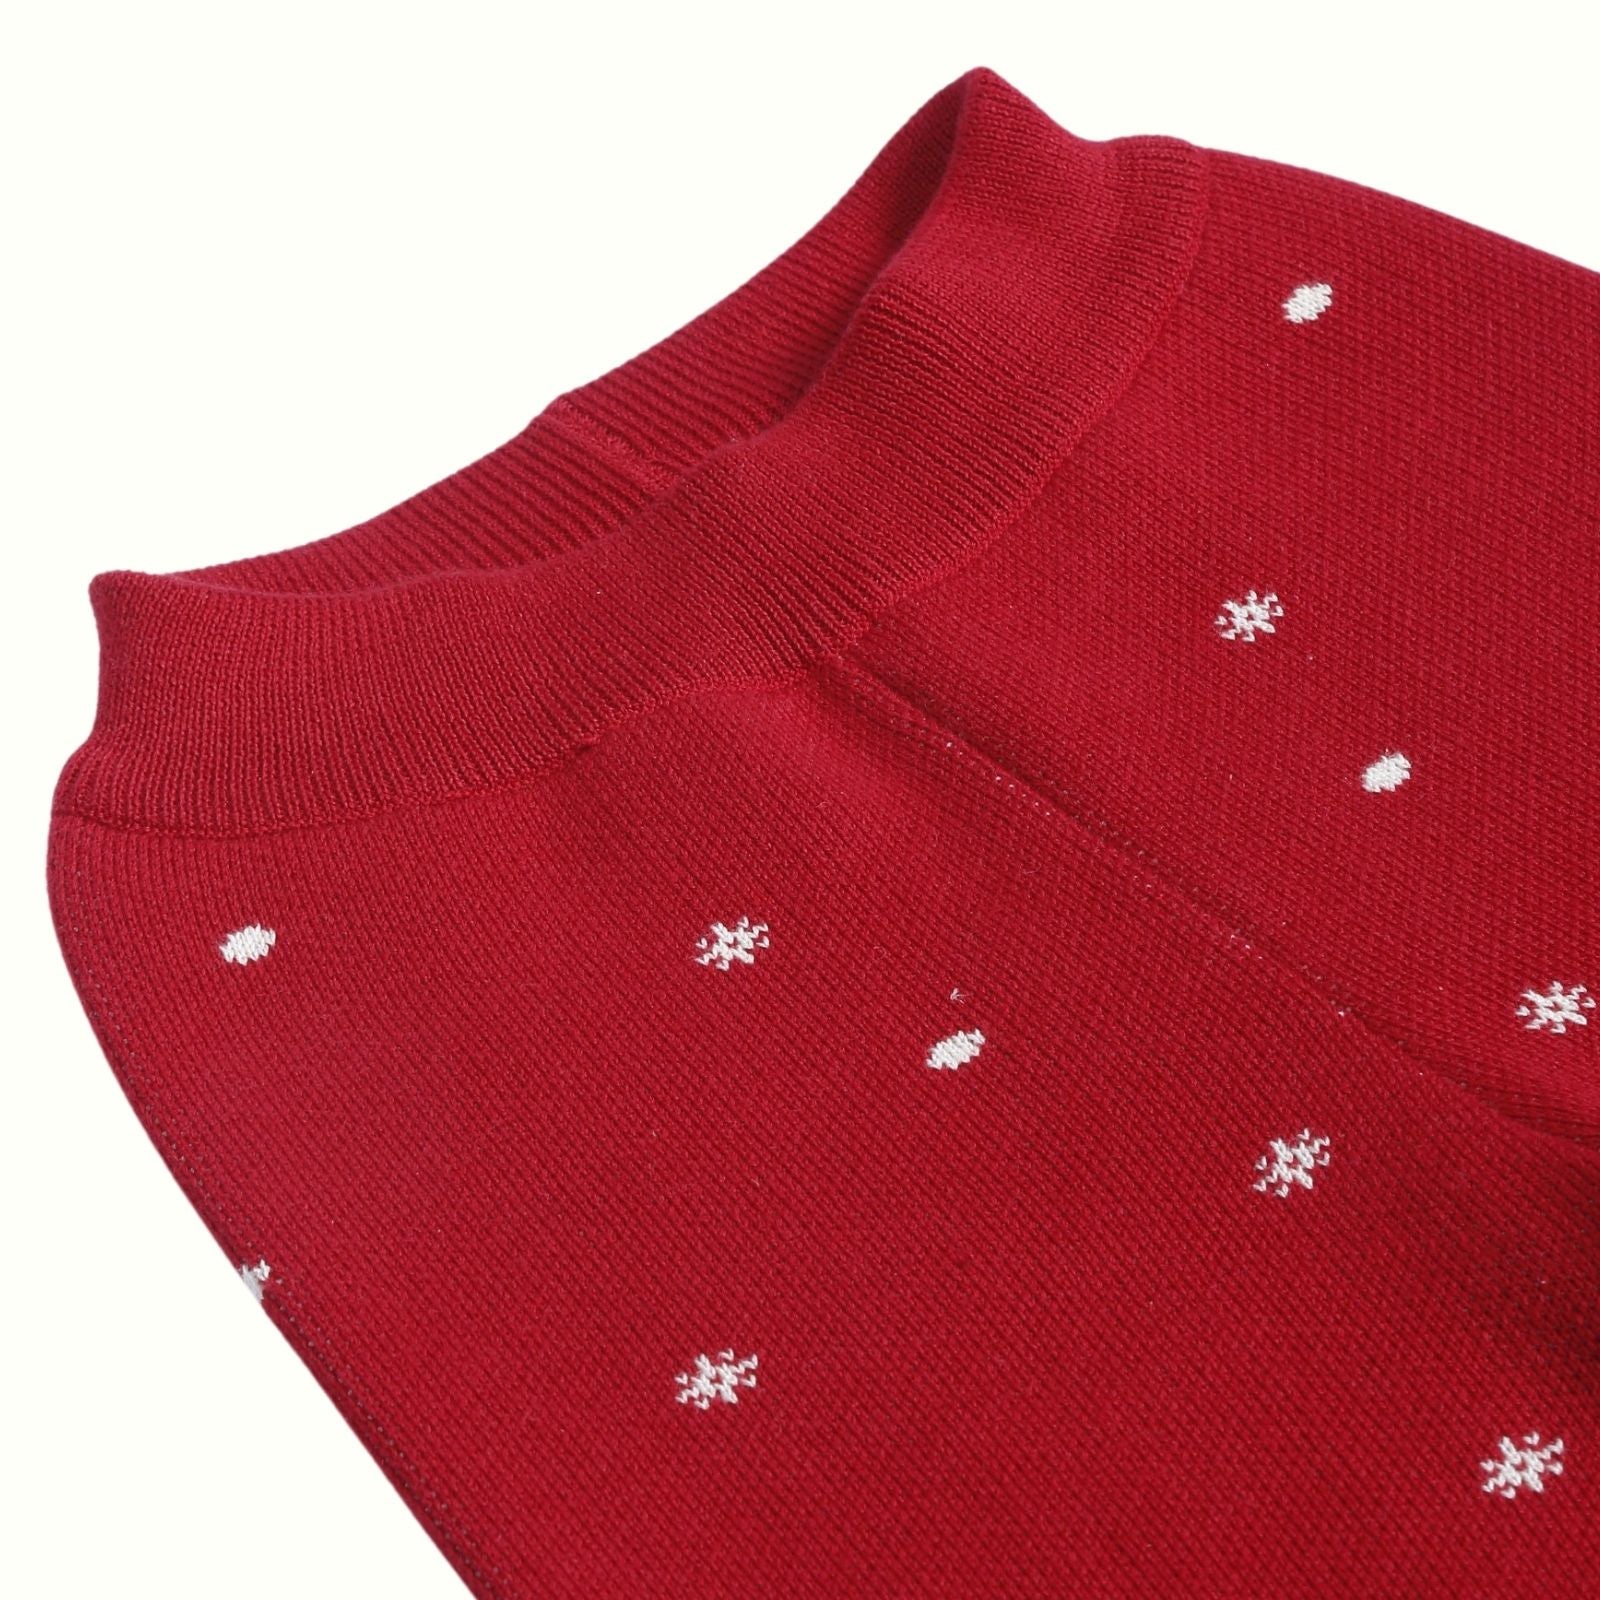 Greendeer Santa & Joyful Reindeer 100% Cotton Sweater with Red Lower Set of 3